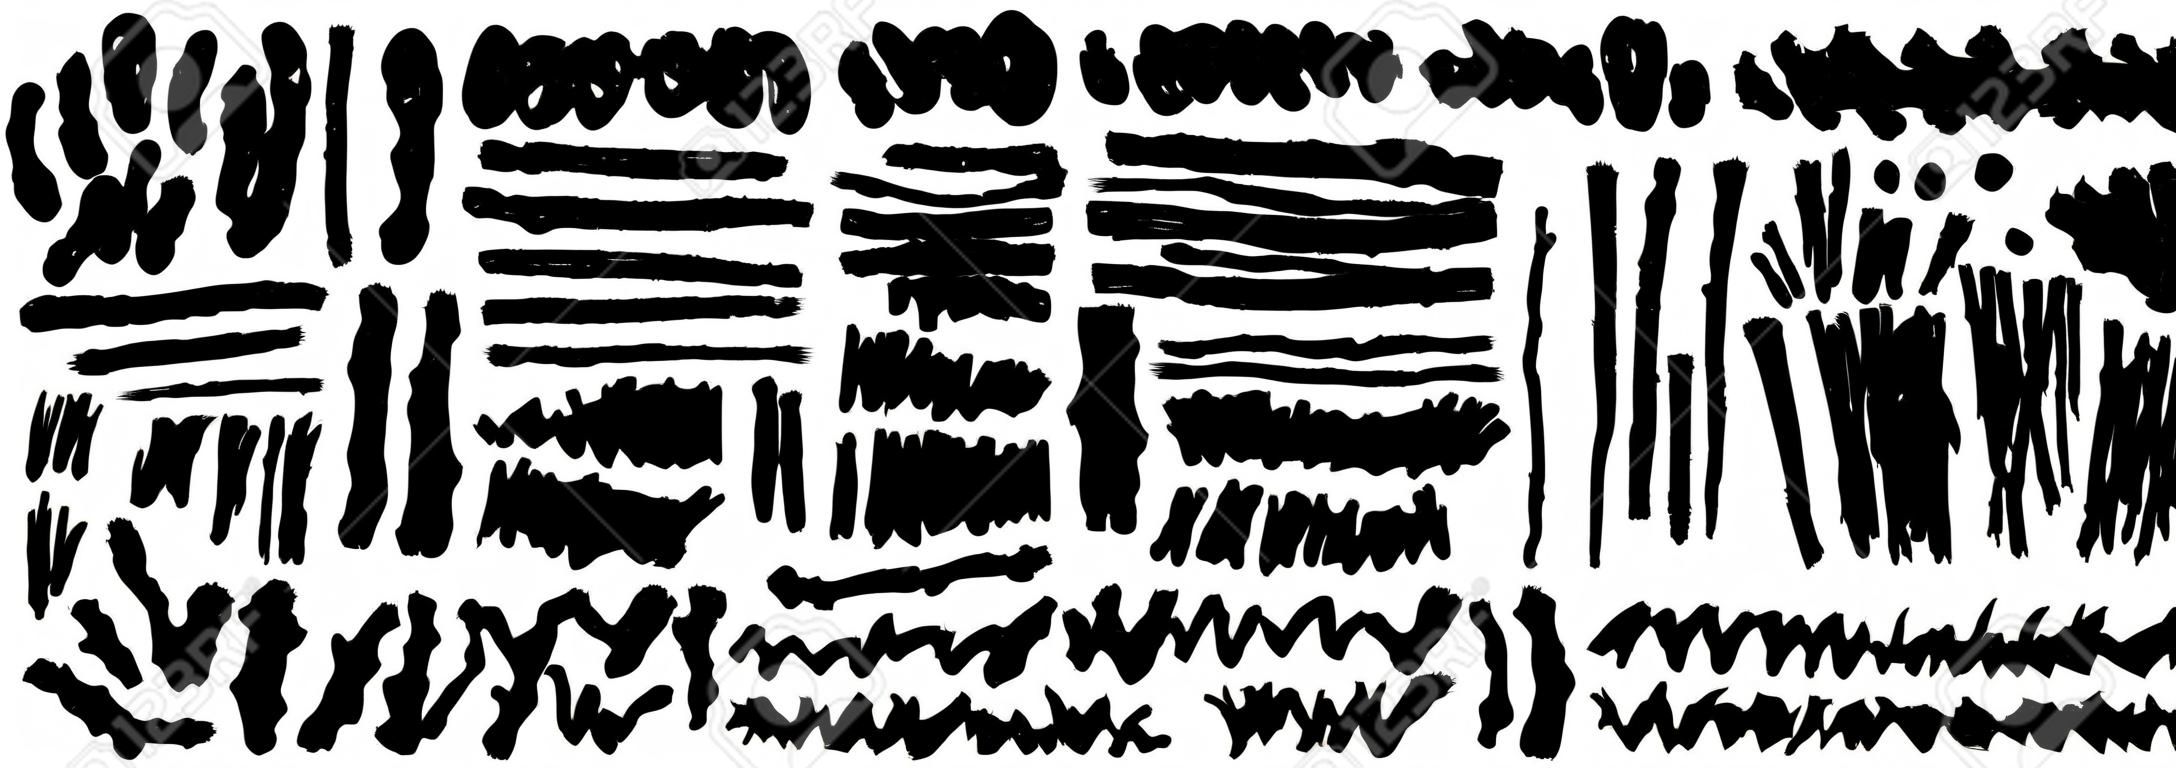 Conjunto de mano dibuja pintura negra, trazos de pincel de tinta, pinceles, líneas. Elementos de diseño grunge artístico sucio. Vector